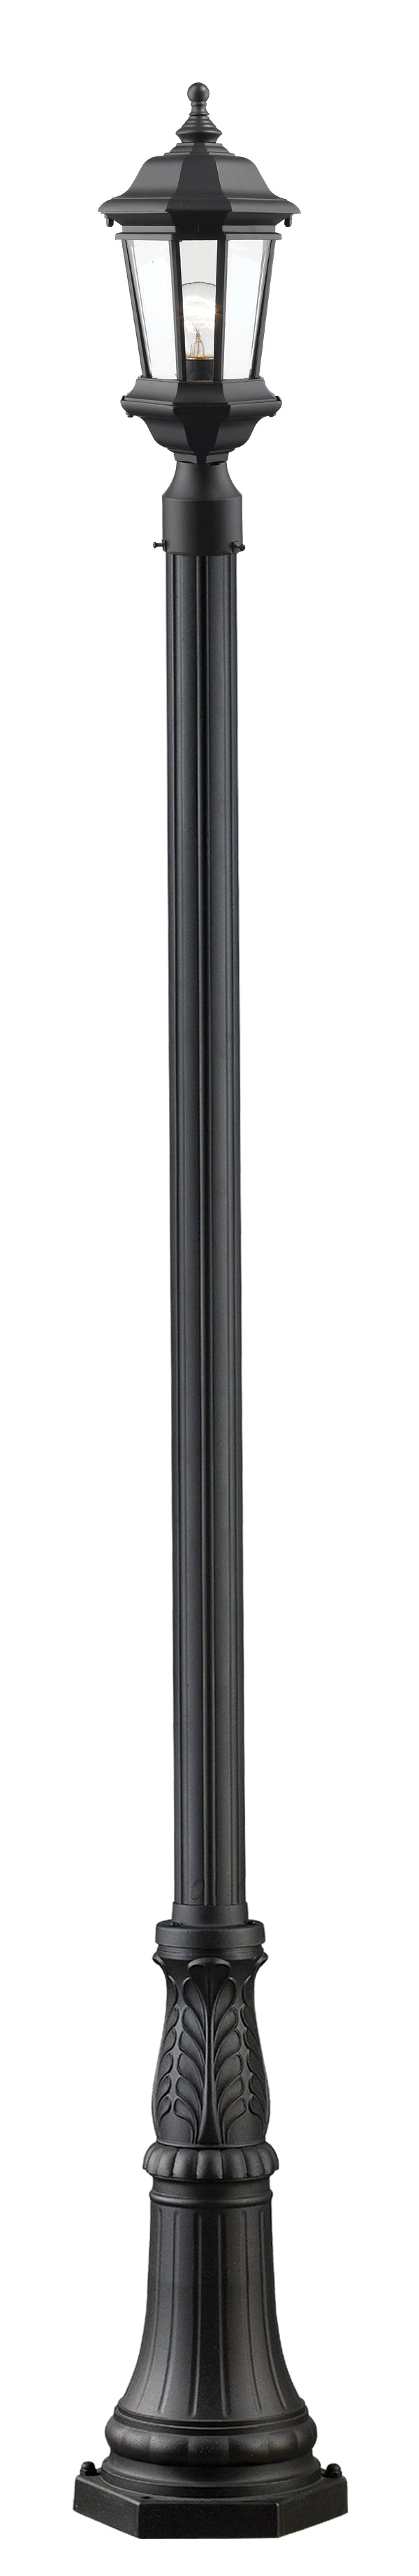 MELBOURNE Luminaire sur poteau Noir - 540PHM-518P-BK | Z-LITE